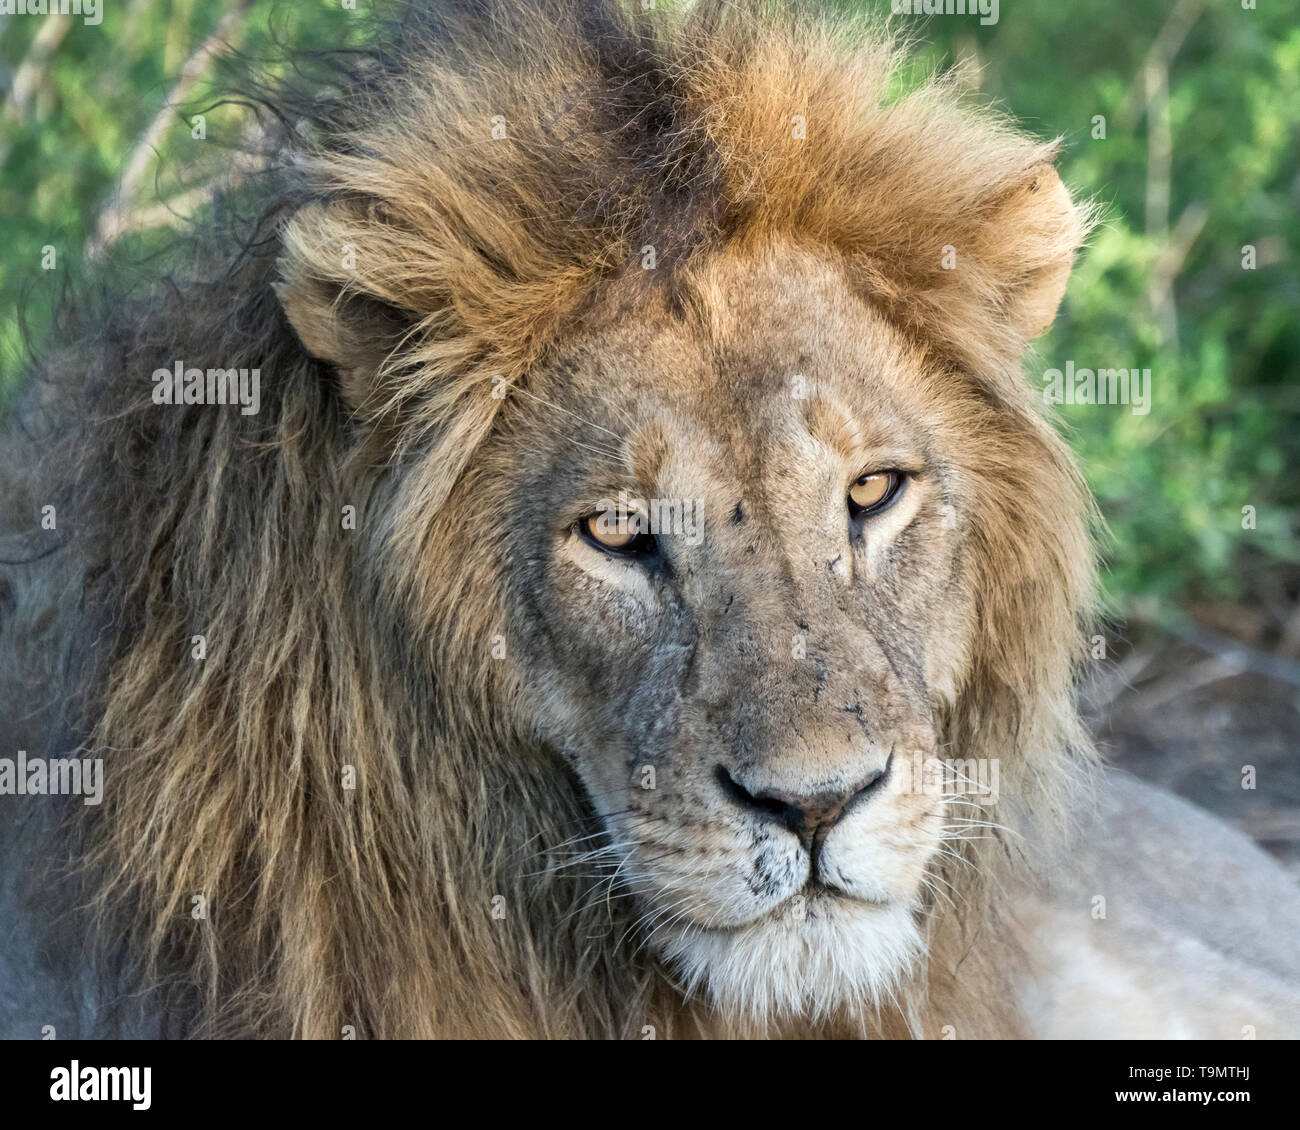 Golden-eyed stare, dominant male lion, Lake Ndutu, Tanzania Stock Photo